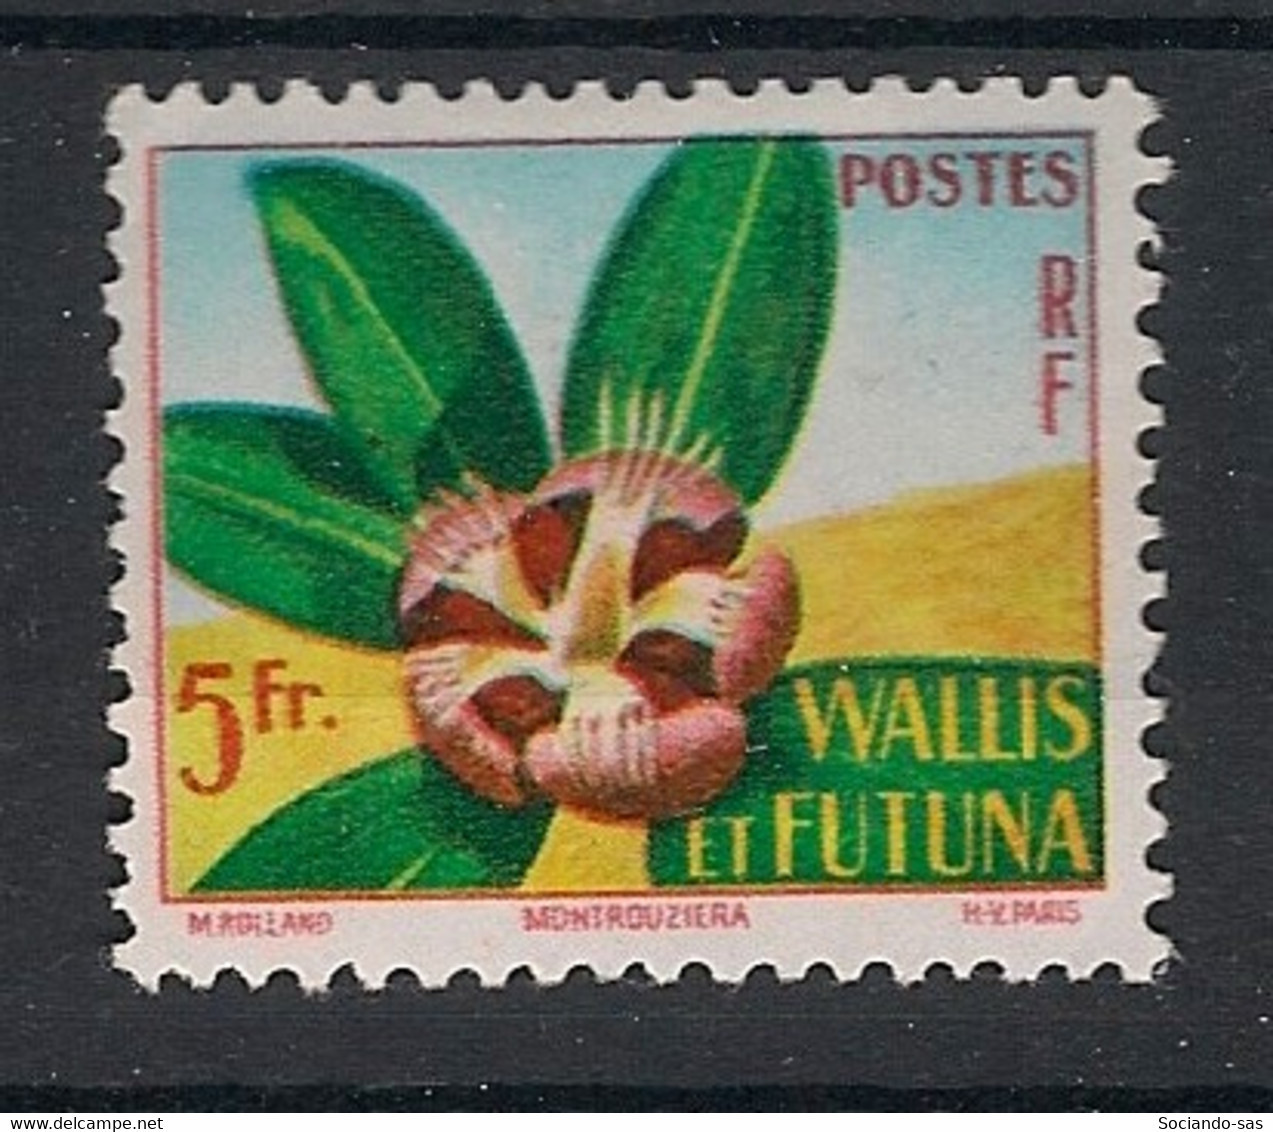 WALLIS ET FUTUNA - 1958 - N°Yv. 159 - Fleur - Neuf Luxe ** / MNH / Postfrisch - Ongebruikt